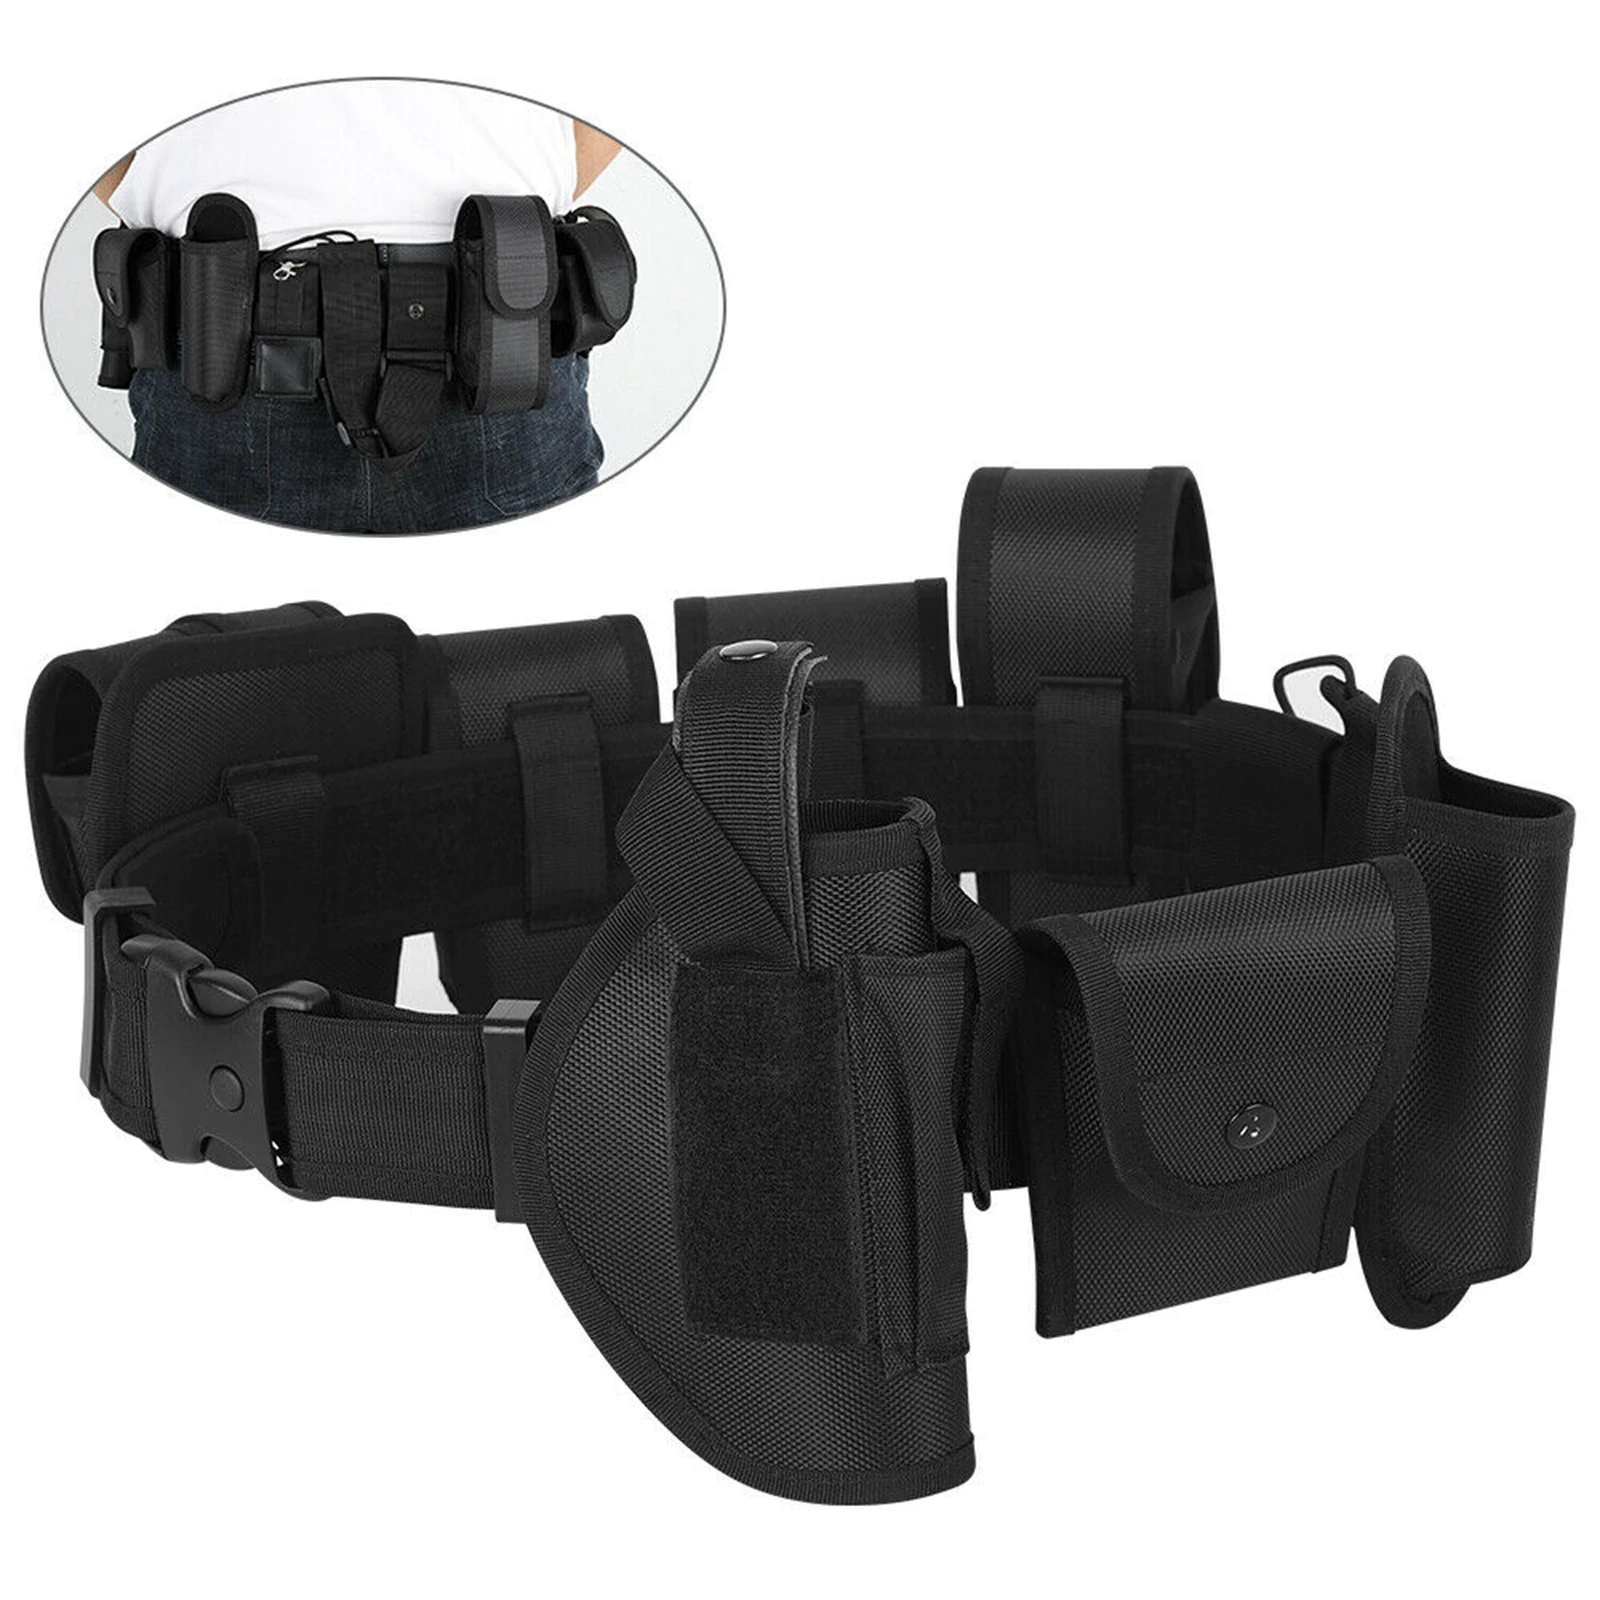 Mens Modular Enforcement Equipment Duty Utility Belt Waist Belly Band Black